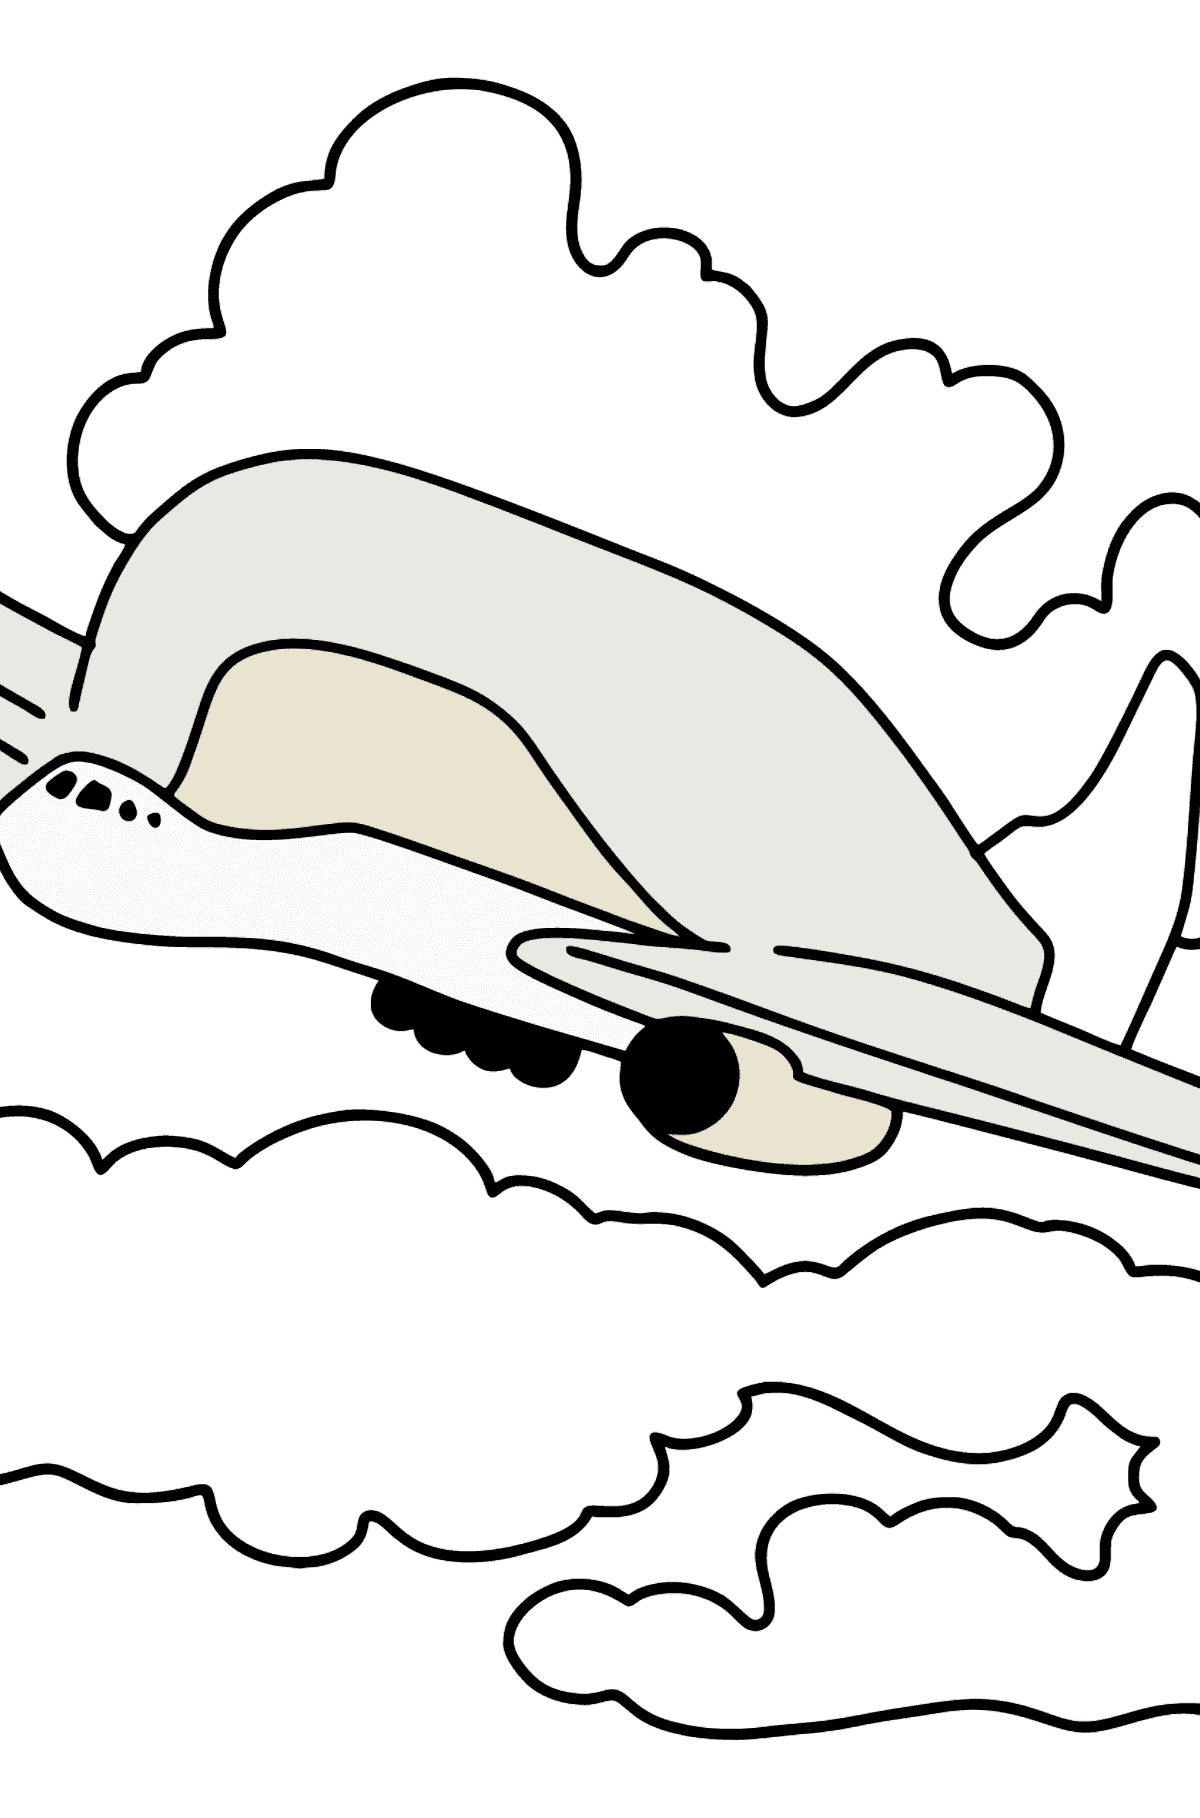 Desenho para colorir de avião de carga - Imagens para Colorir para Crianças